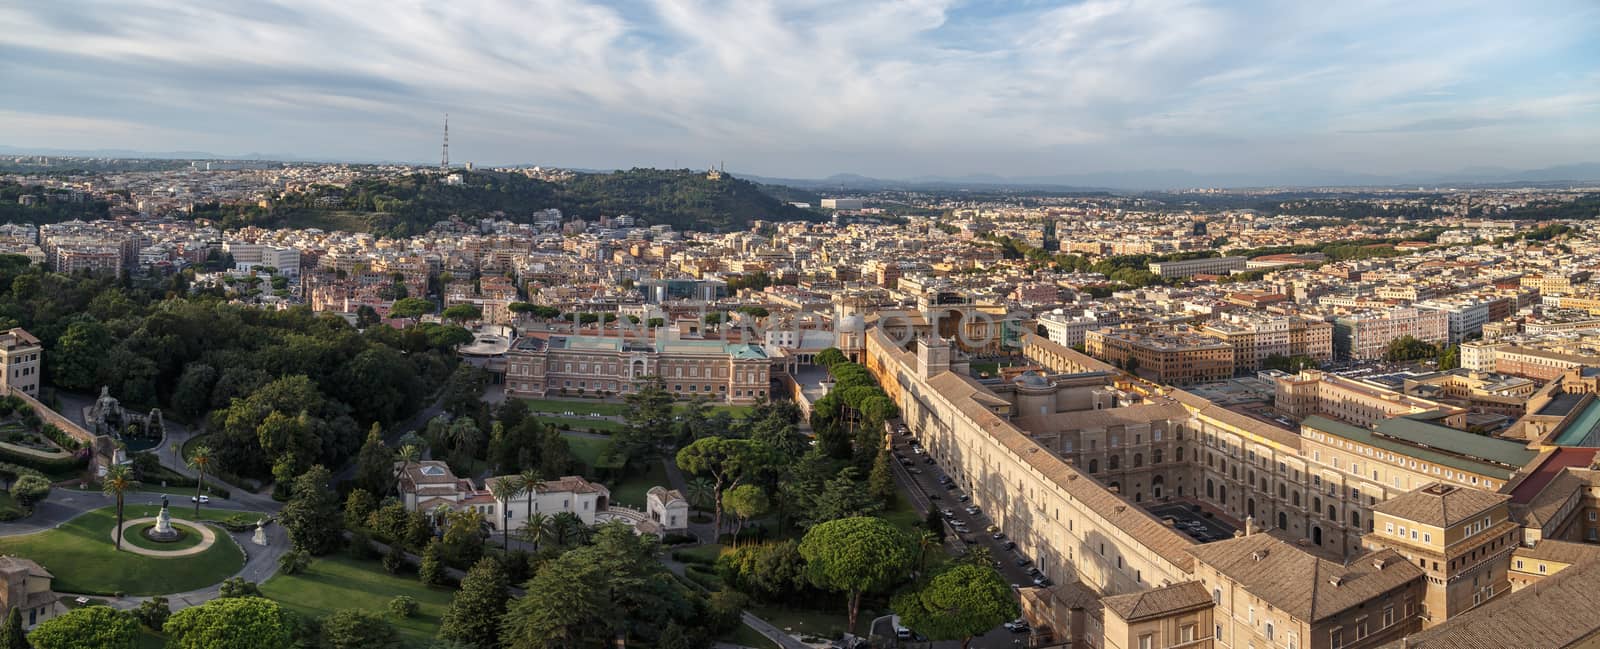 Vatican City Top View by niglaynike